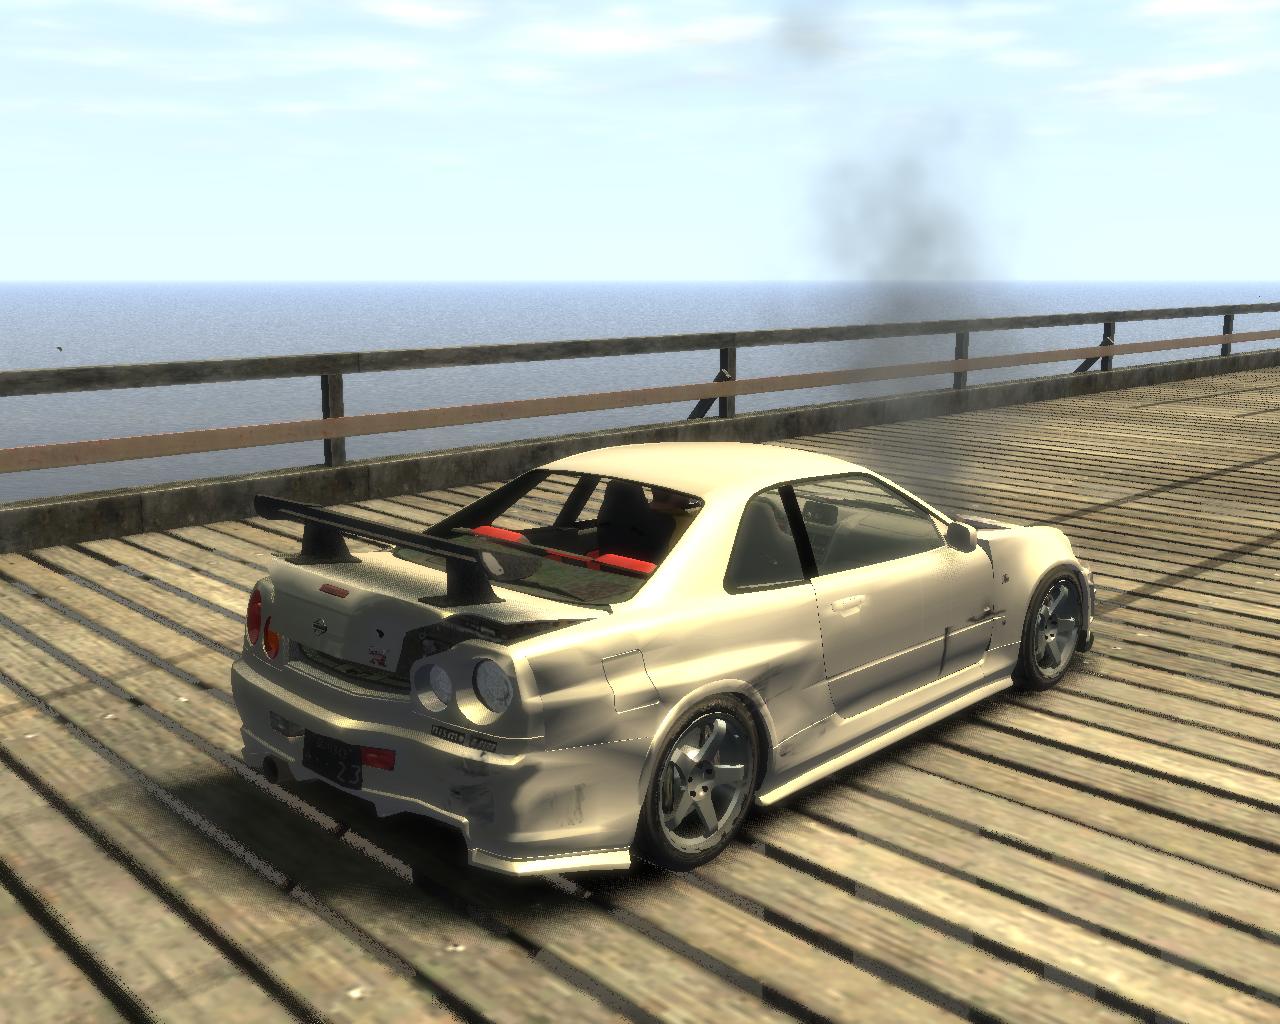 GTA4-Mods.com - Grand Theft Auto 4 car mods, tools, and more!